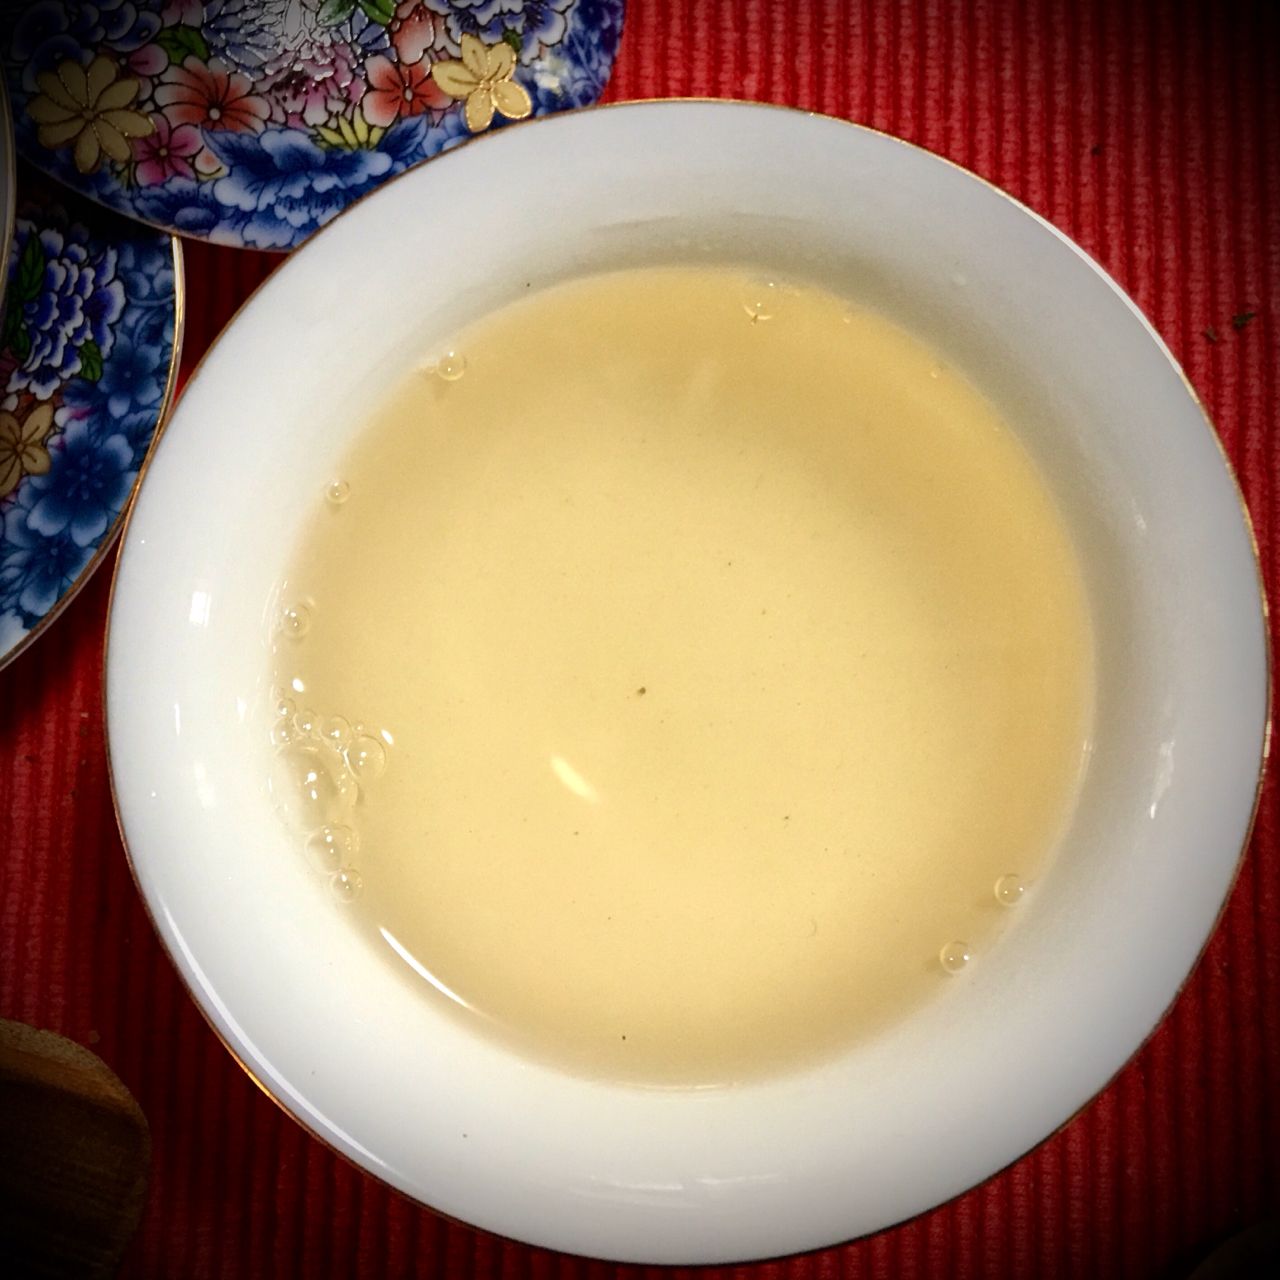 Mò Lì Huā Lóng Zhū Bái Chá, 茉莉花龙珠白茶, Jasmine Flower Dragon Pearl White Tea